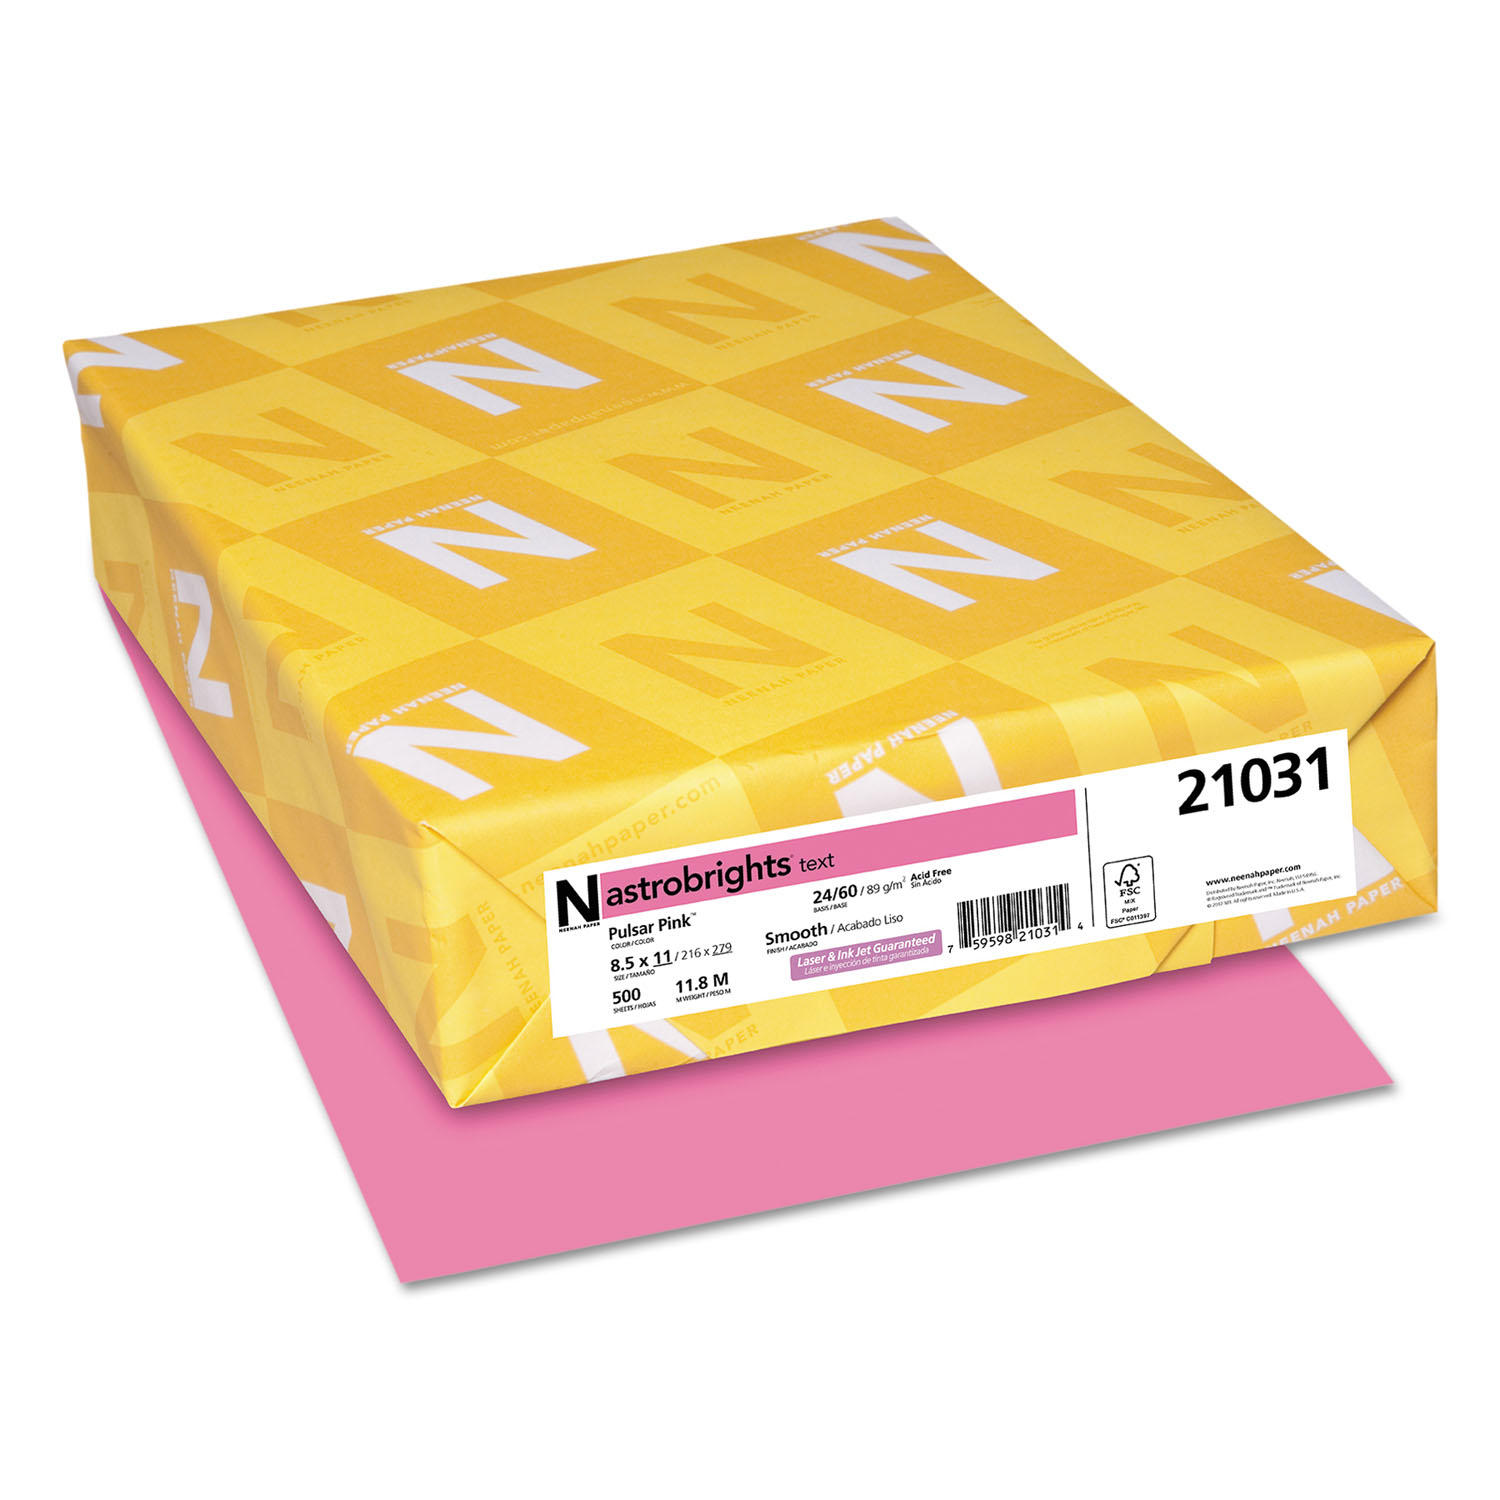 Astrobrights Color Paper, 8.5' x 11', 24 lb/89 gsm, 500 Sheets, Pulsar Pink